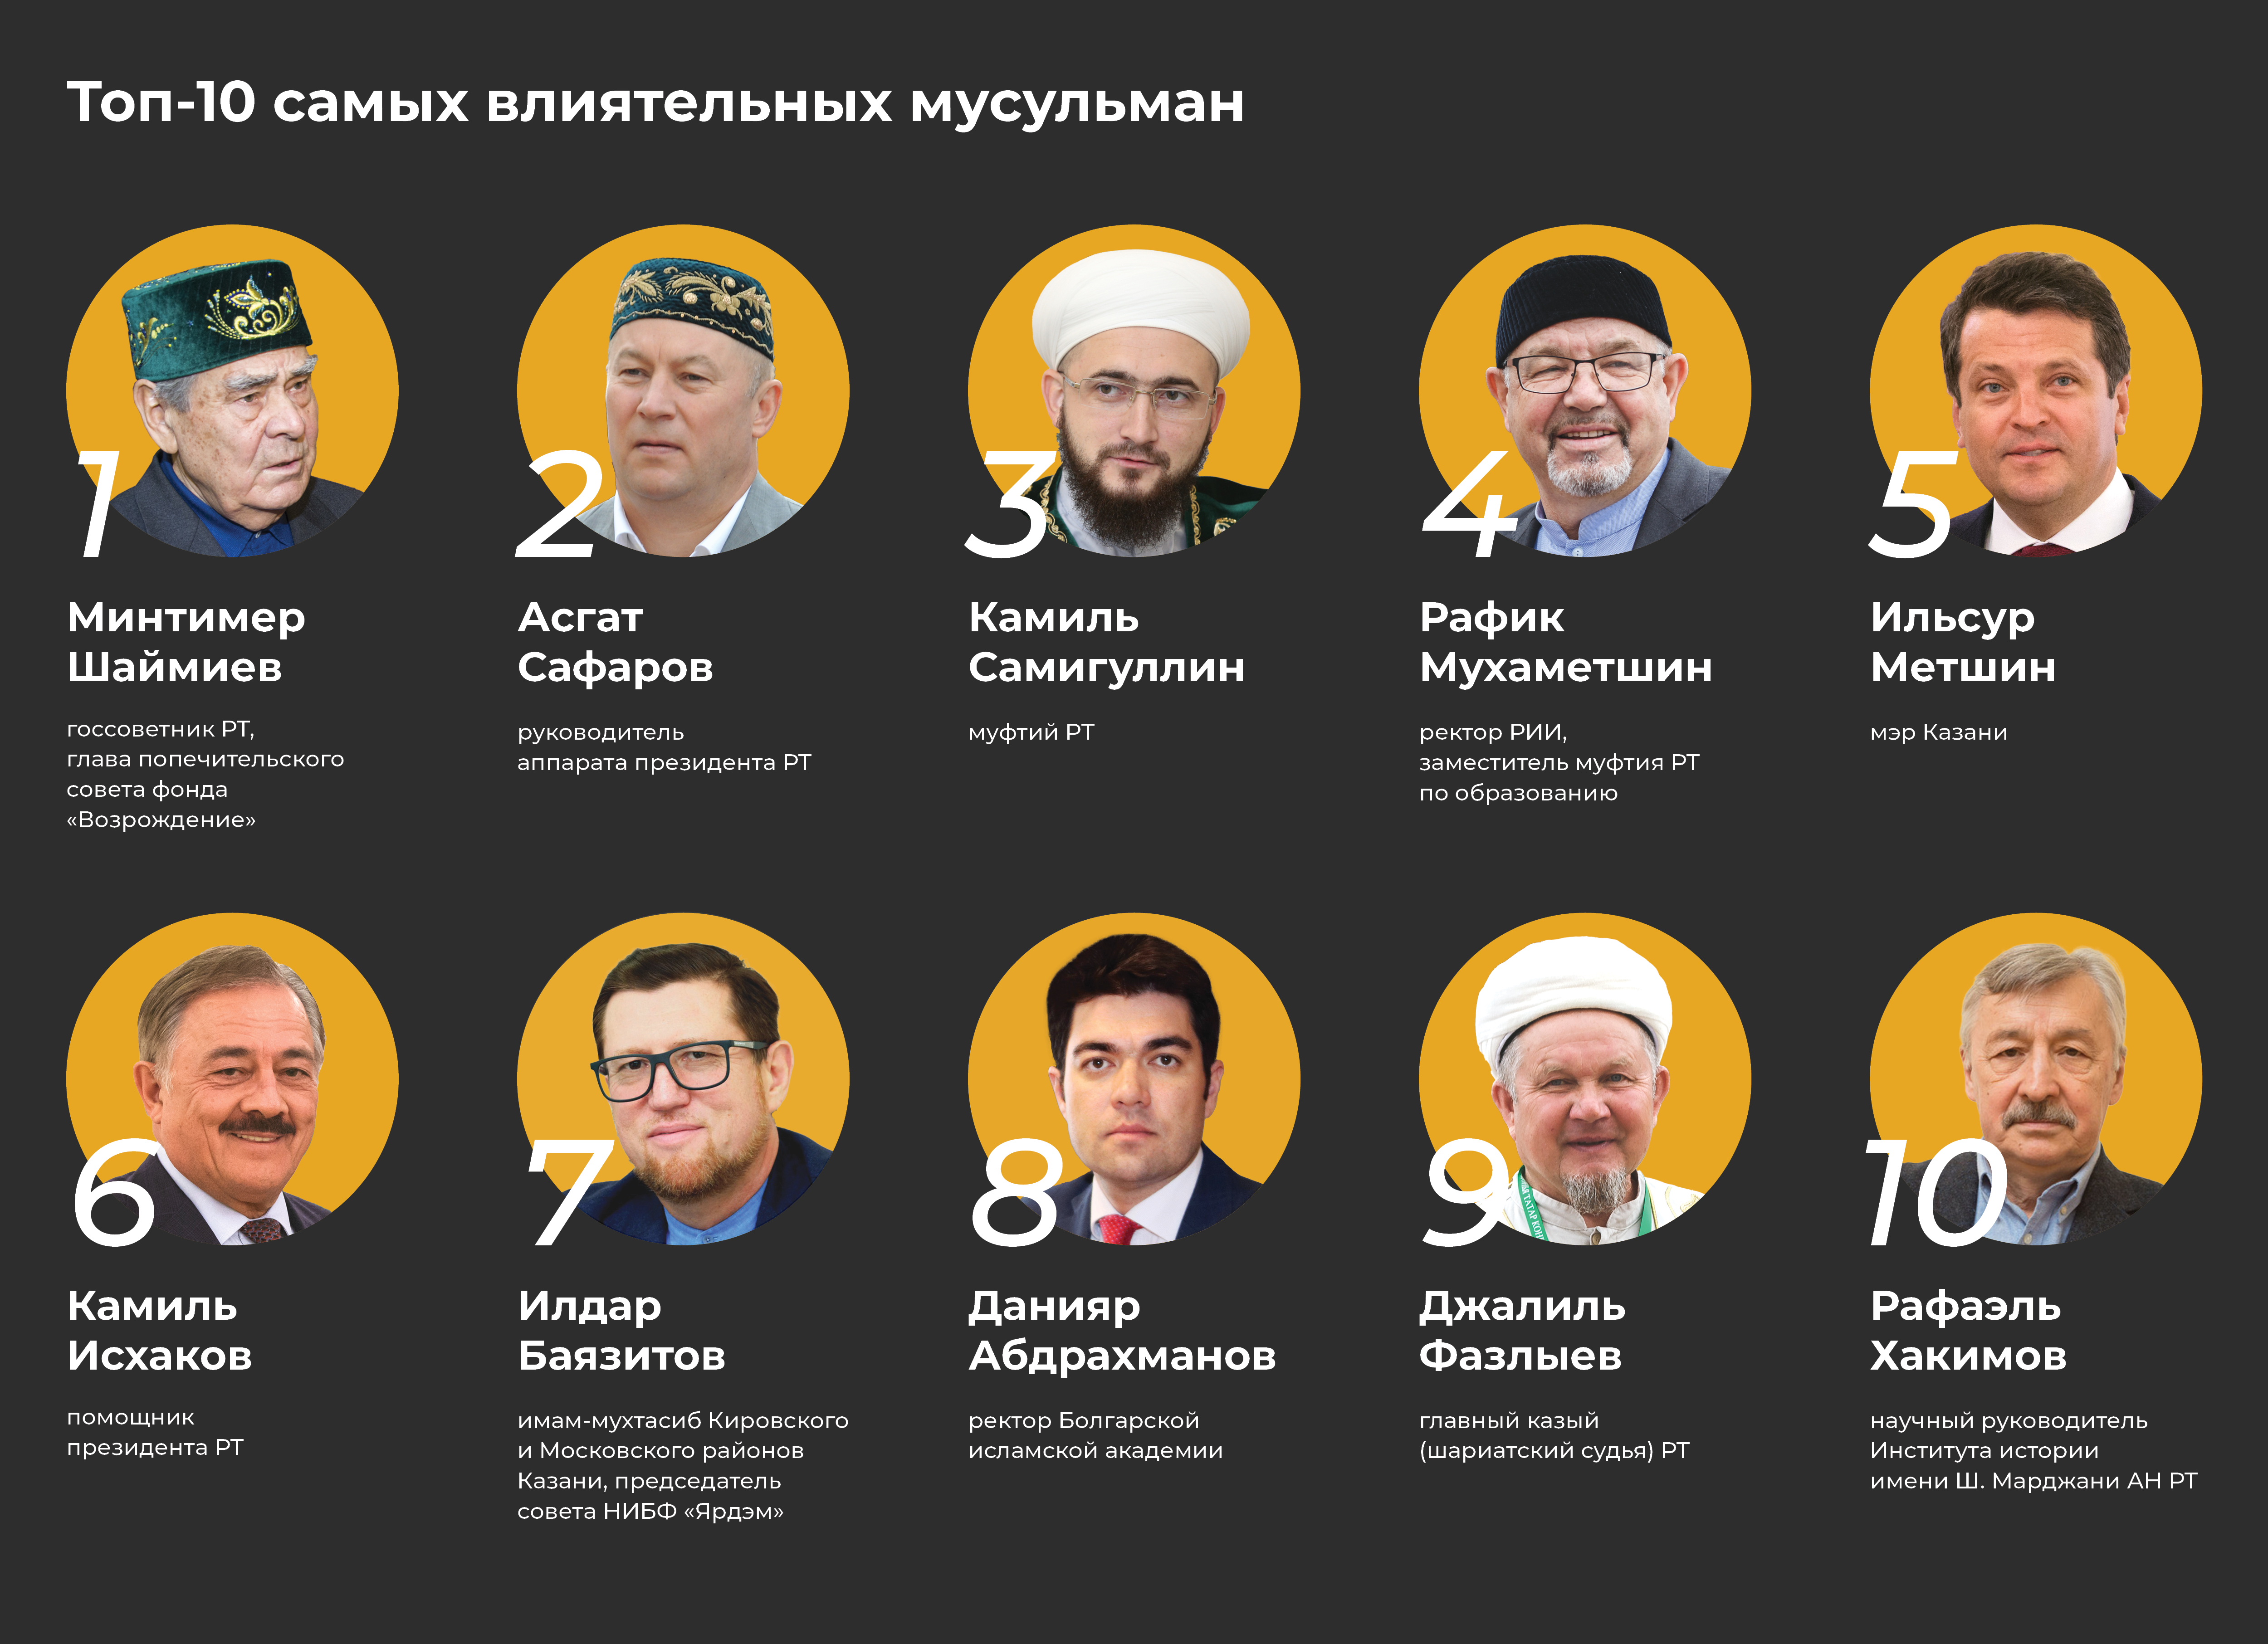 Самого влиятельного человека в истории. Самый влиятельный мусульманин. Влиятельные люди Ислама. Самый влиятельный мусульманин в России. Самые богатые мусульмане.